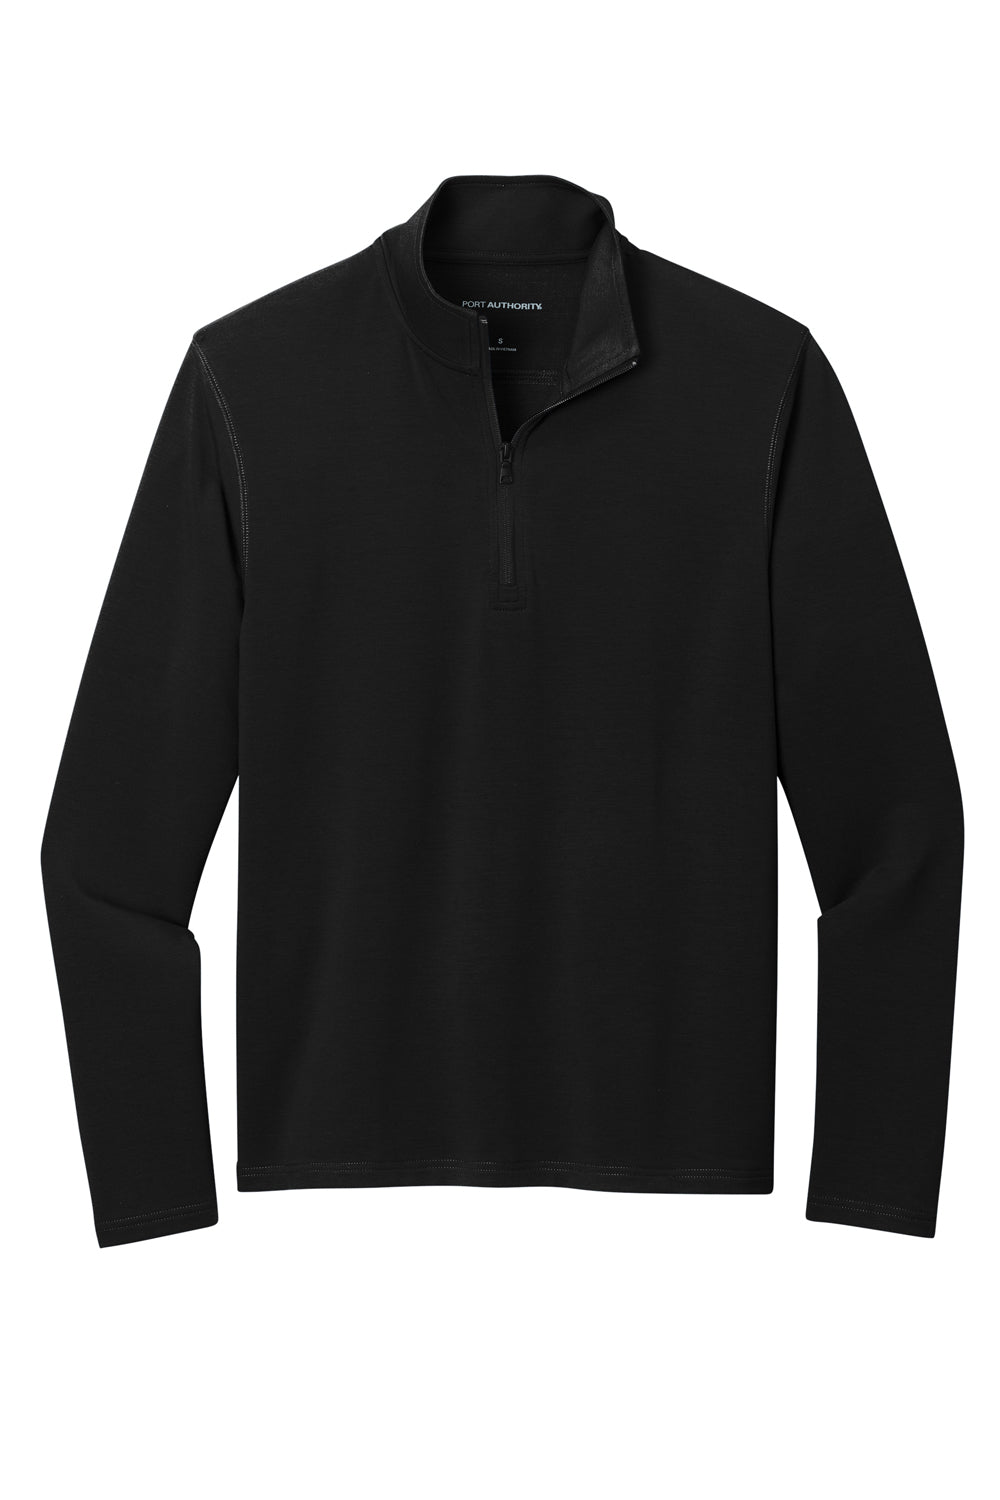 Port Authority K825 Microterry 1/4 Zip Sweatshirt Deep Black Flat Front